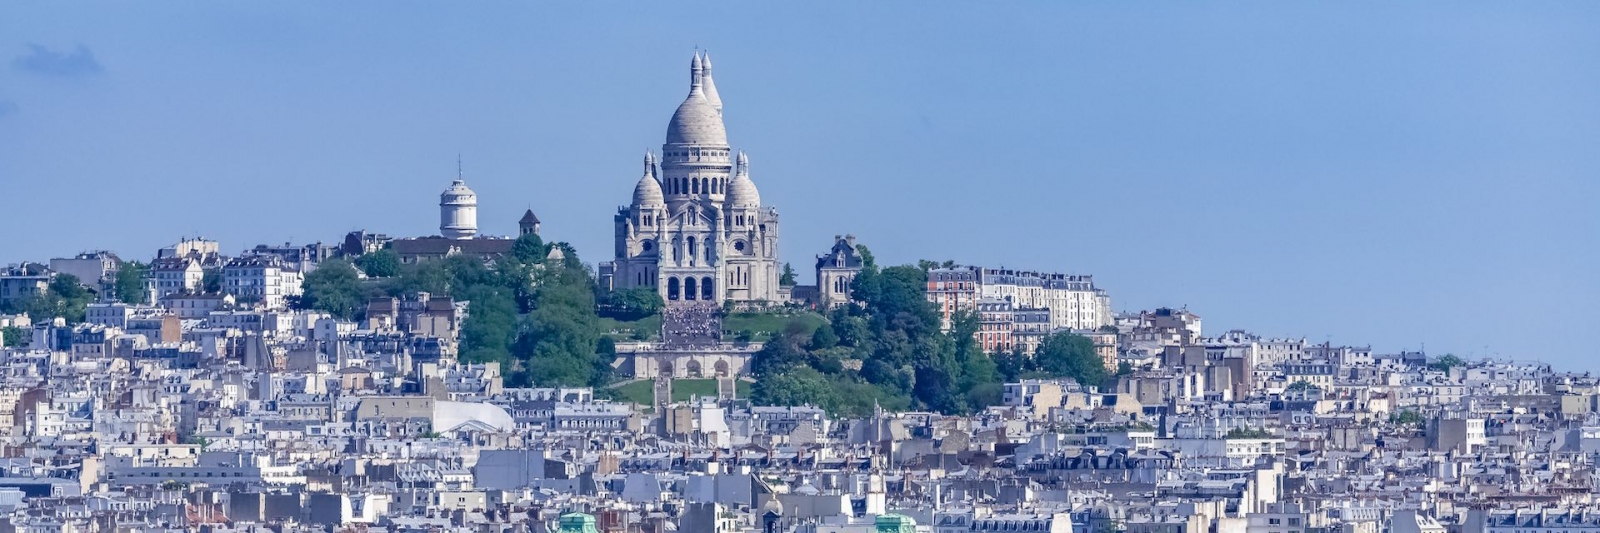 Parigi, panorama della città, tetti ed edifici tipici, con Montmartre e la basilica del Sacro Choeur sullo sfondo